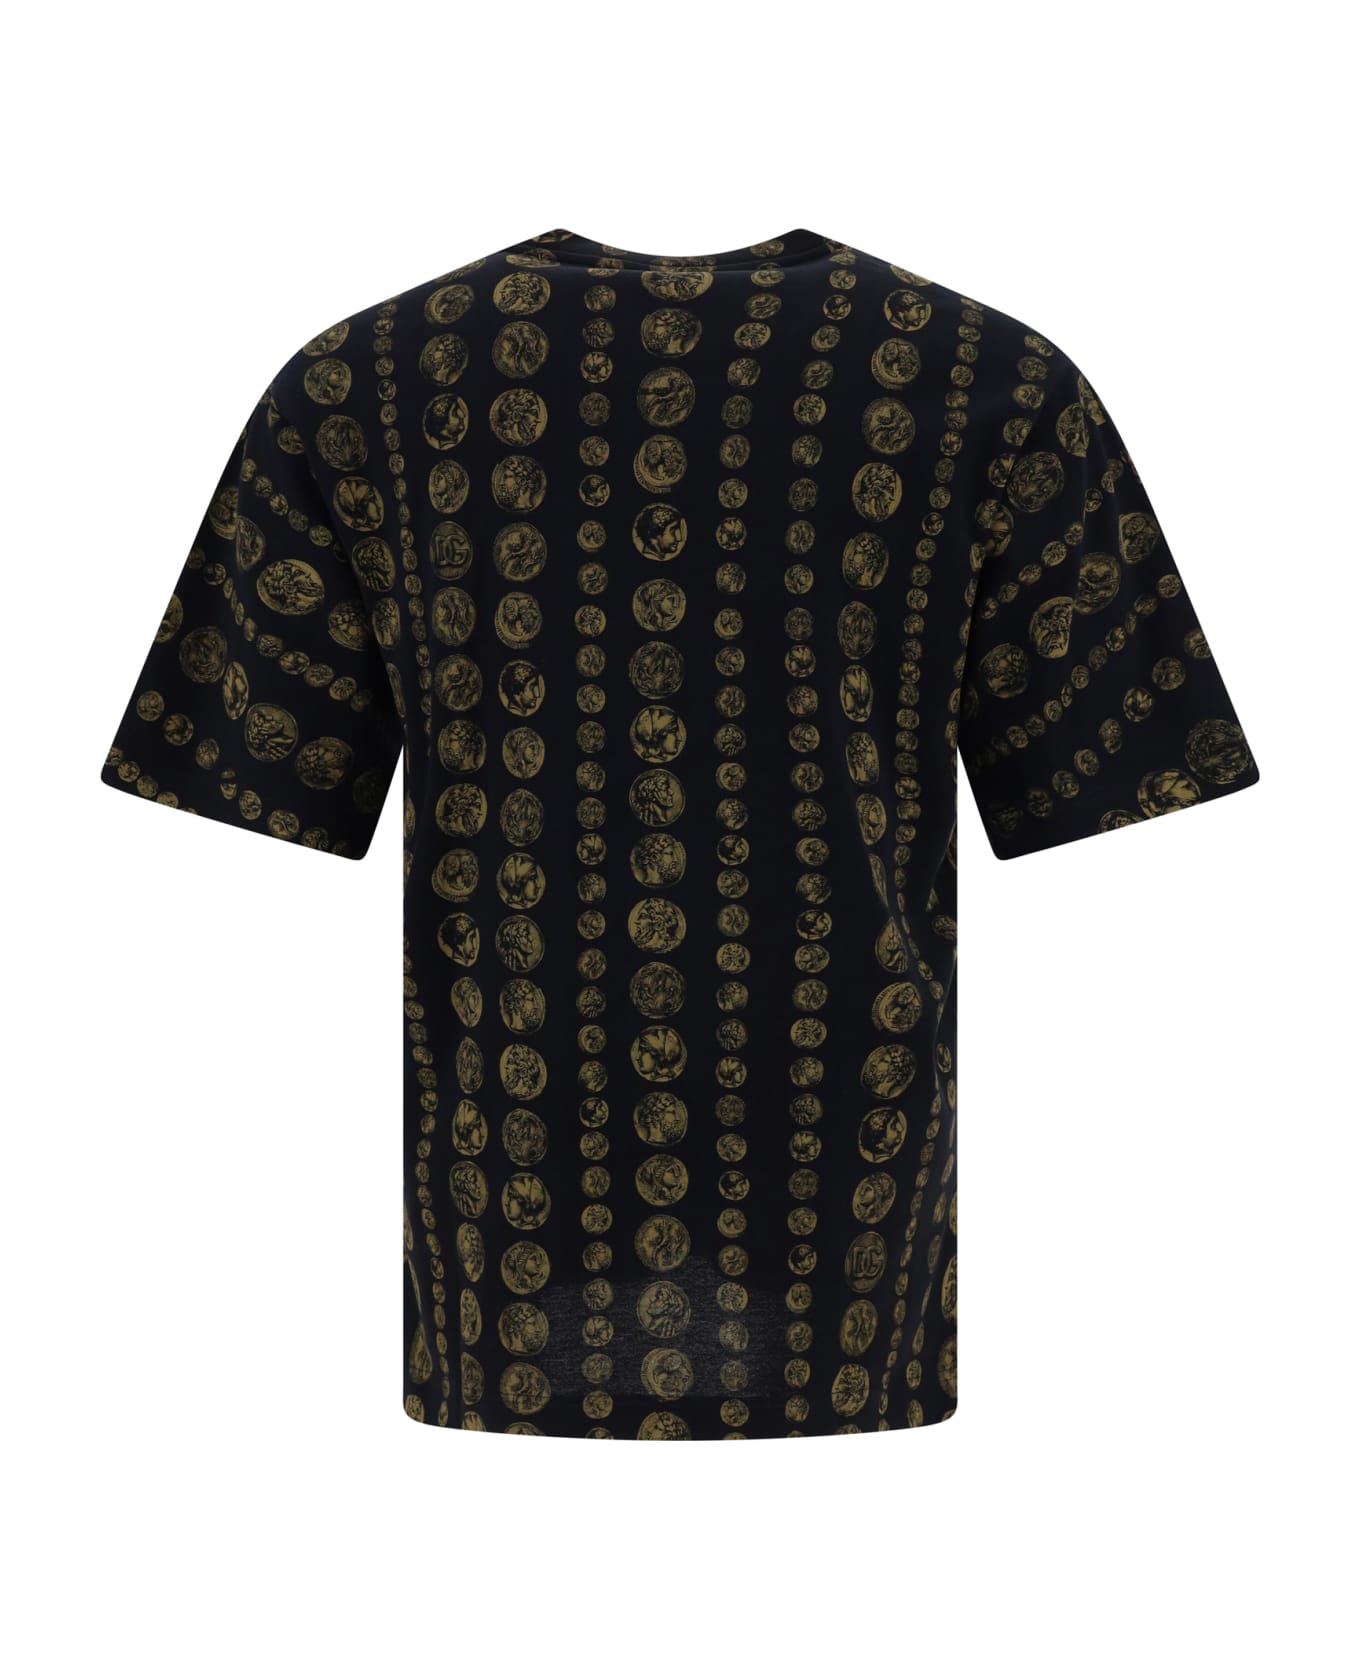 Dolce & Gabbana Allover Coins Print T-shirt - Monete F.do Nero シャツ